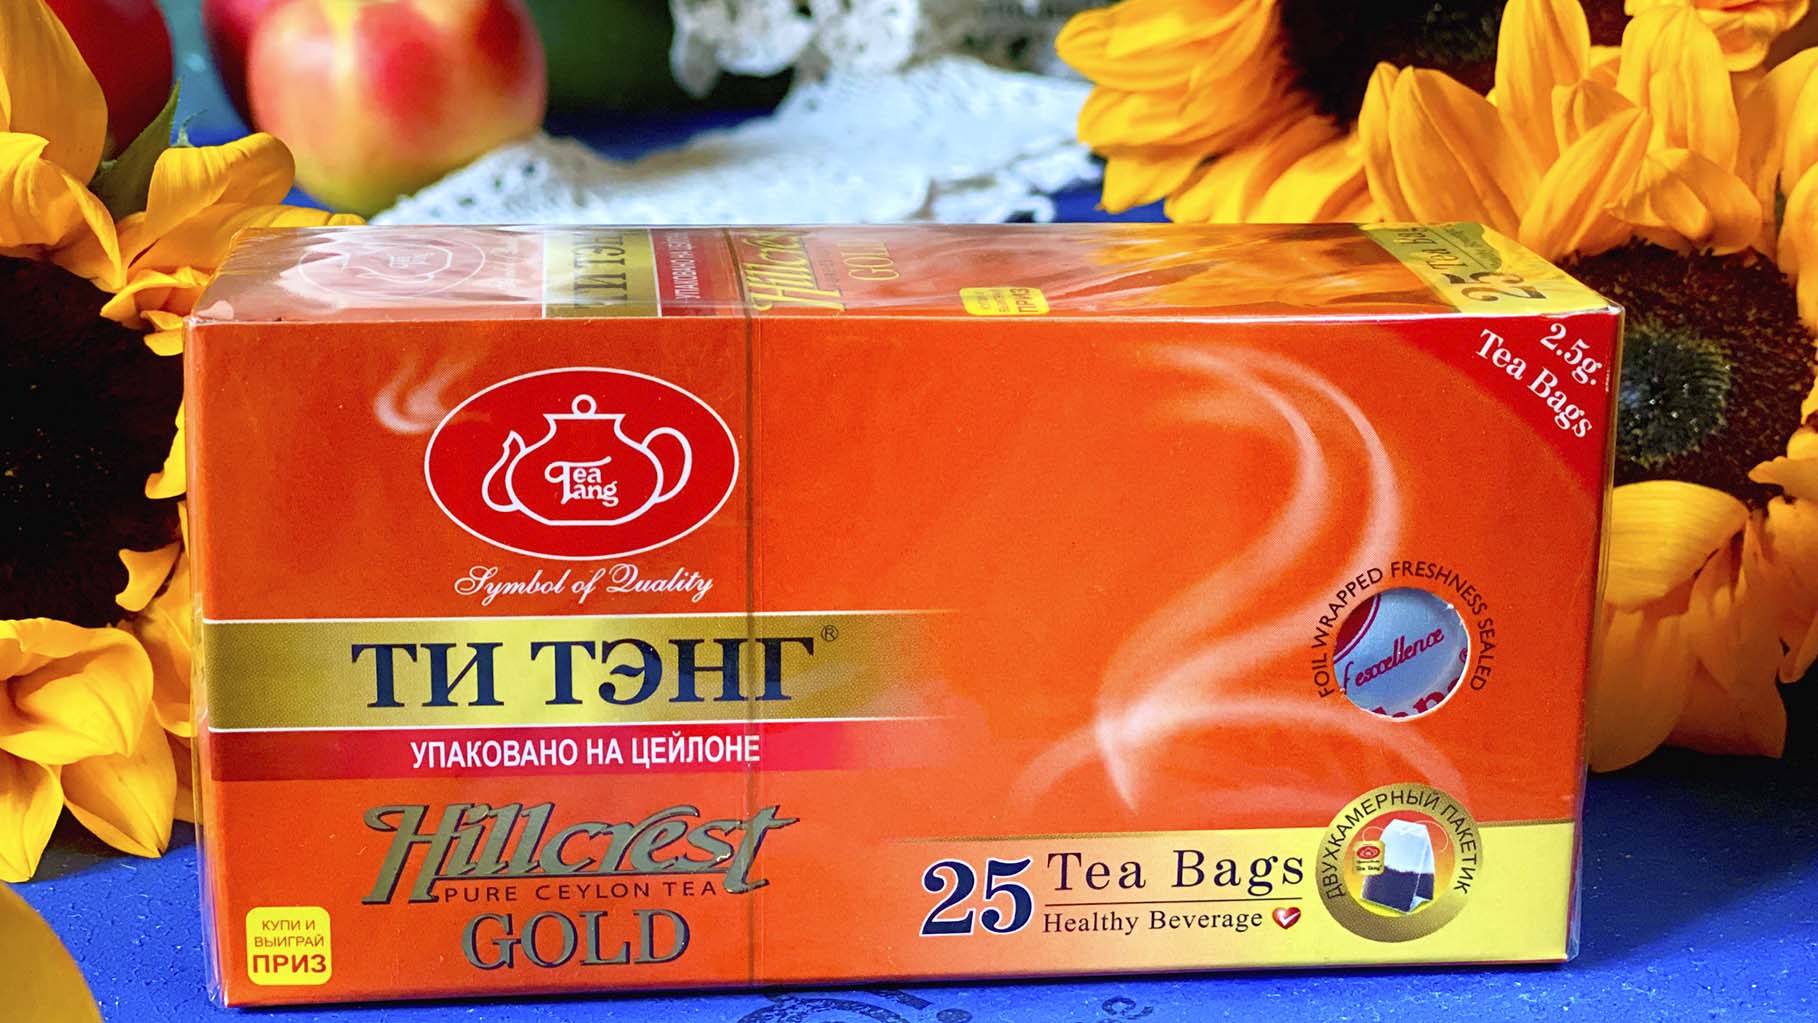 Черный чай ТИ ТЭНГ Hillcrest GOLD пакетированный  25 пакетов